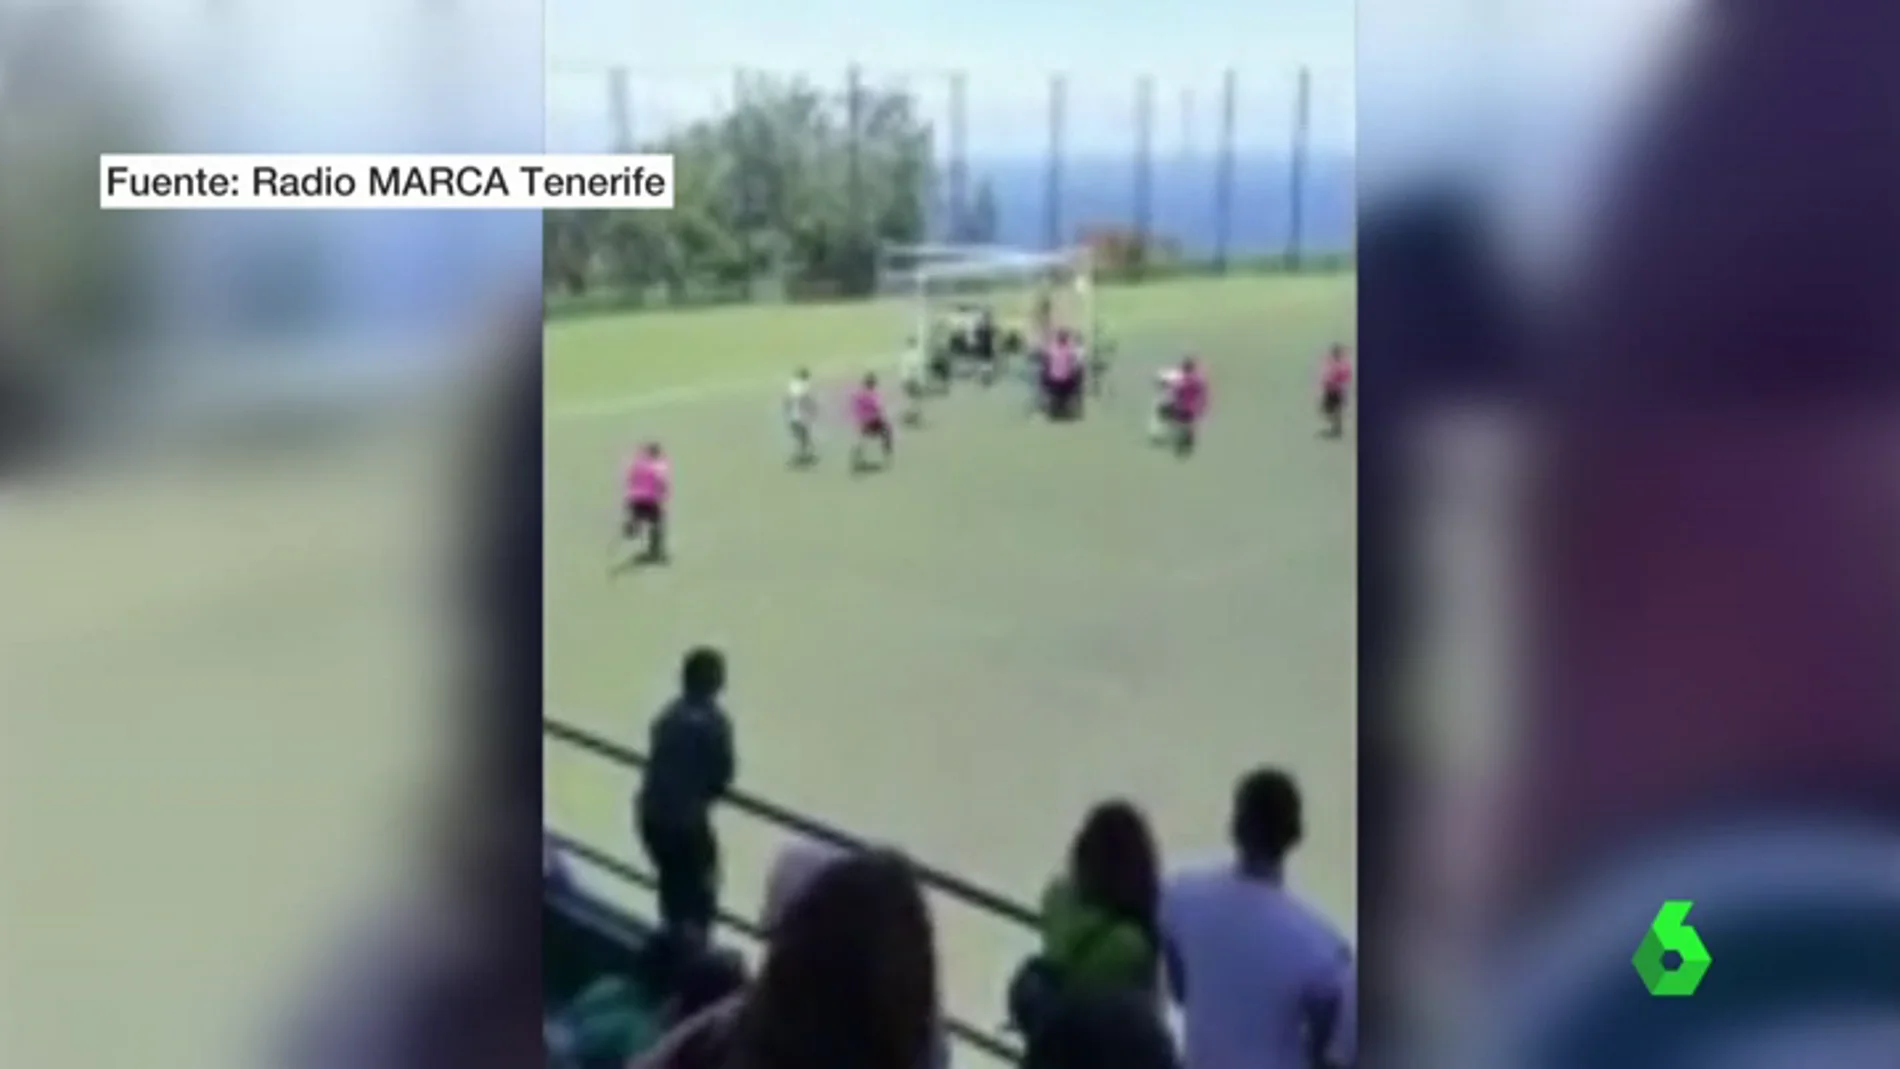 Un árbirtro sufre una brutal agresión en un partido de fútbol en la Victoria, Tenerife